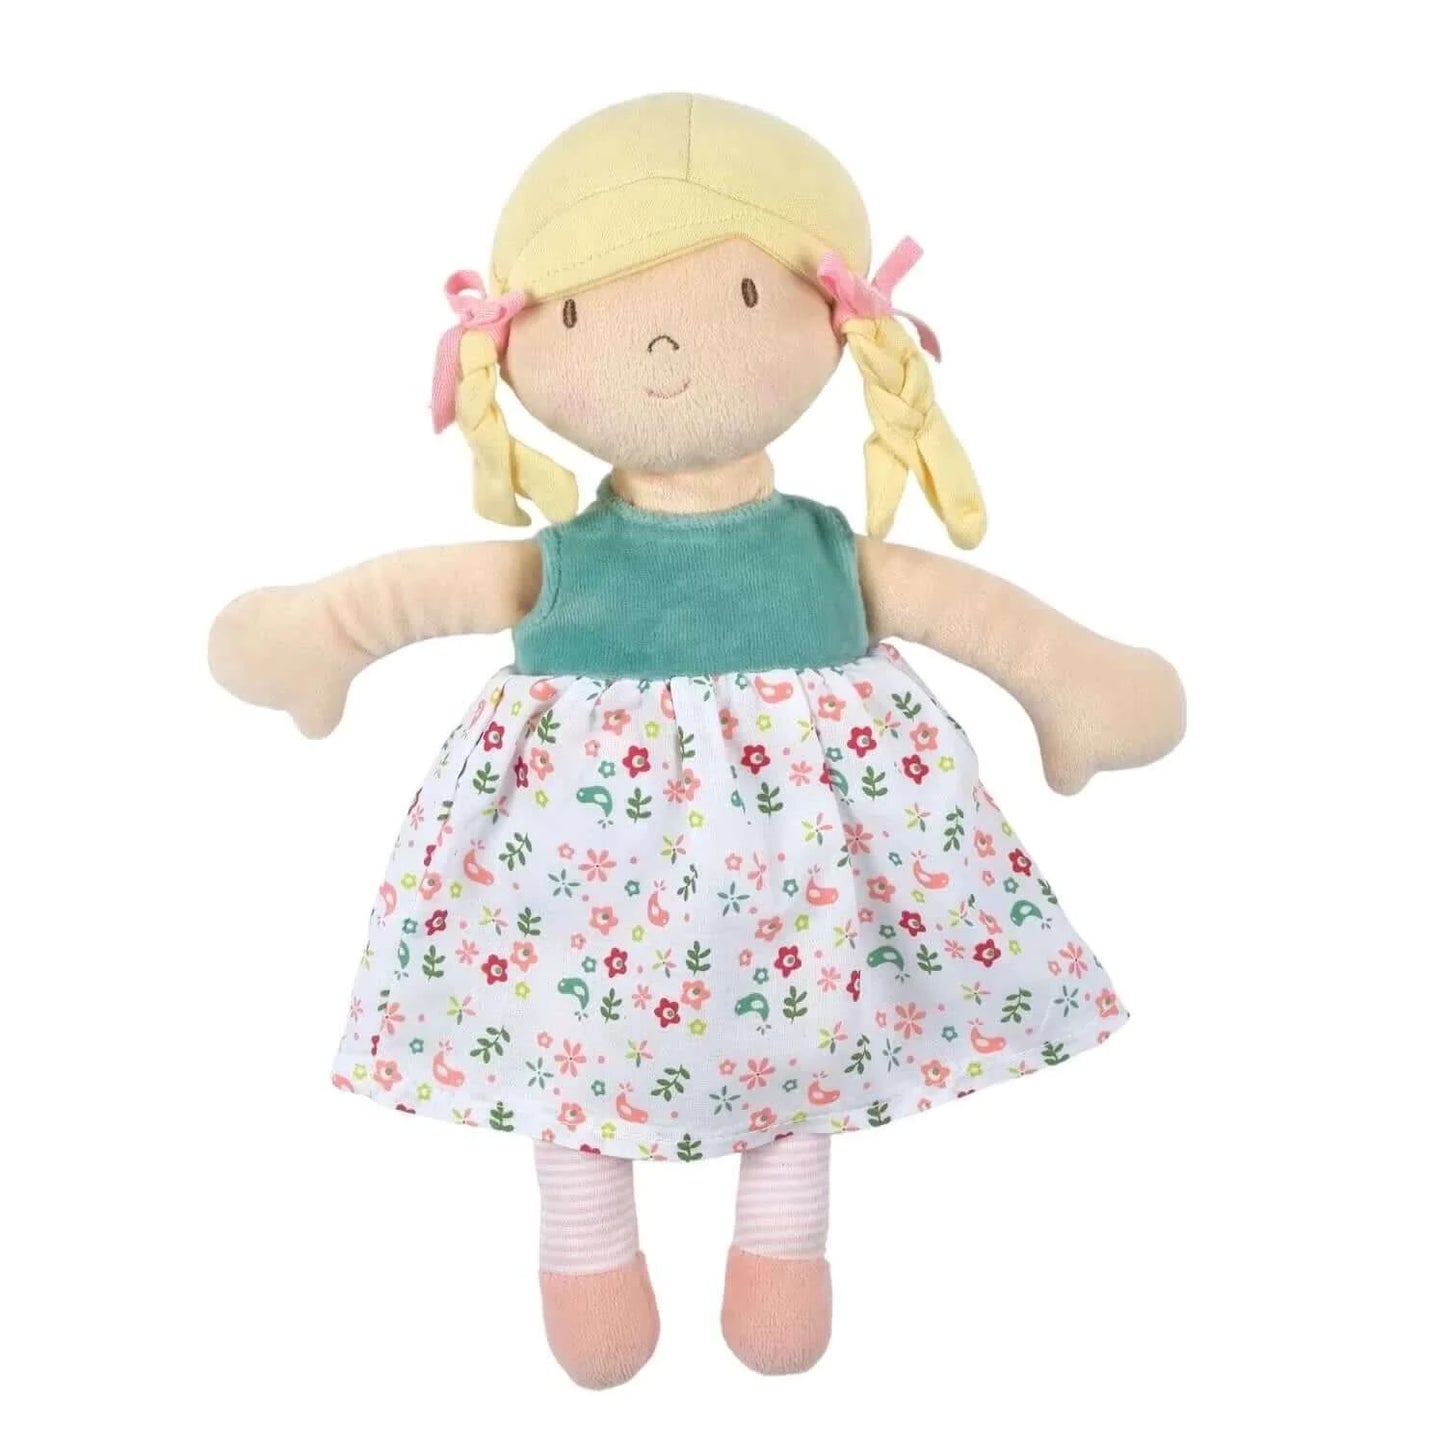 Abby Doll - Blonde Hair with Heat Pack, Tikiri Toys, eco-friendly Toys, Mountain Kids Toys